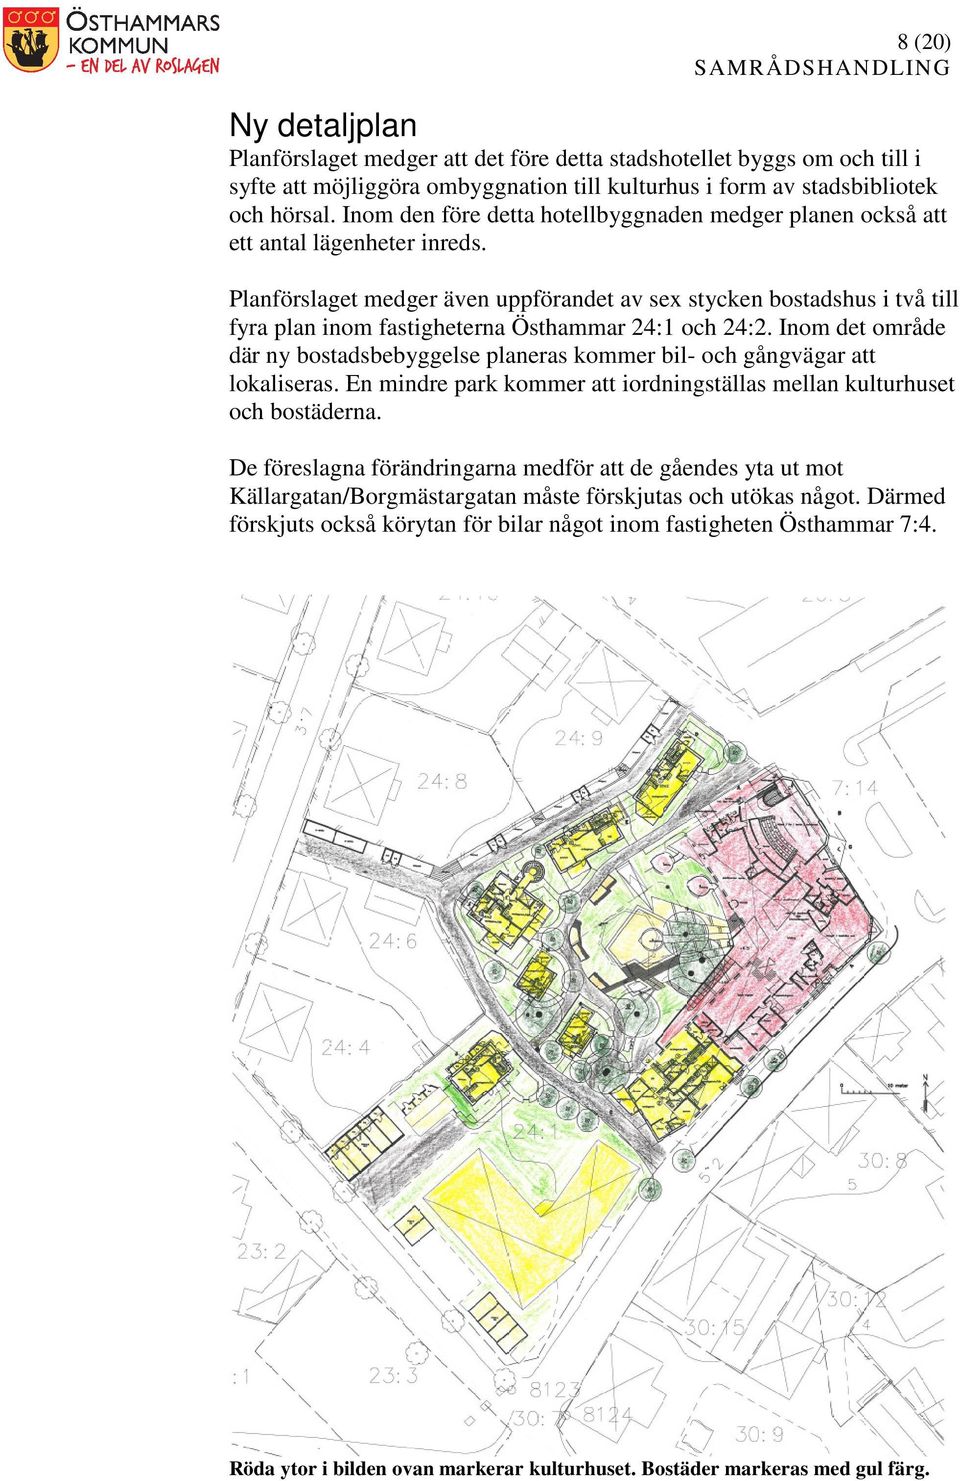 Planförslaget medger även uppförandet av sex stycken bostadshus i två till fyra plan inom fastigheterna Östhammar 24:1 och 24:2.